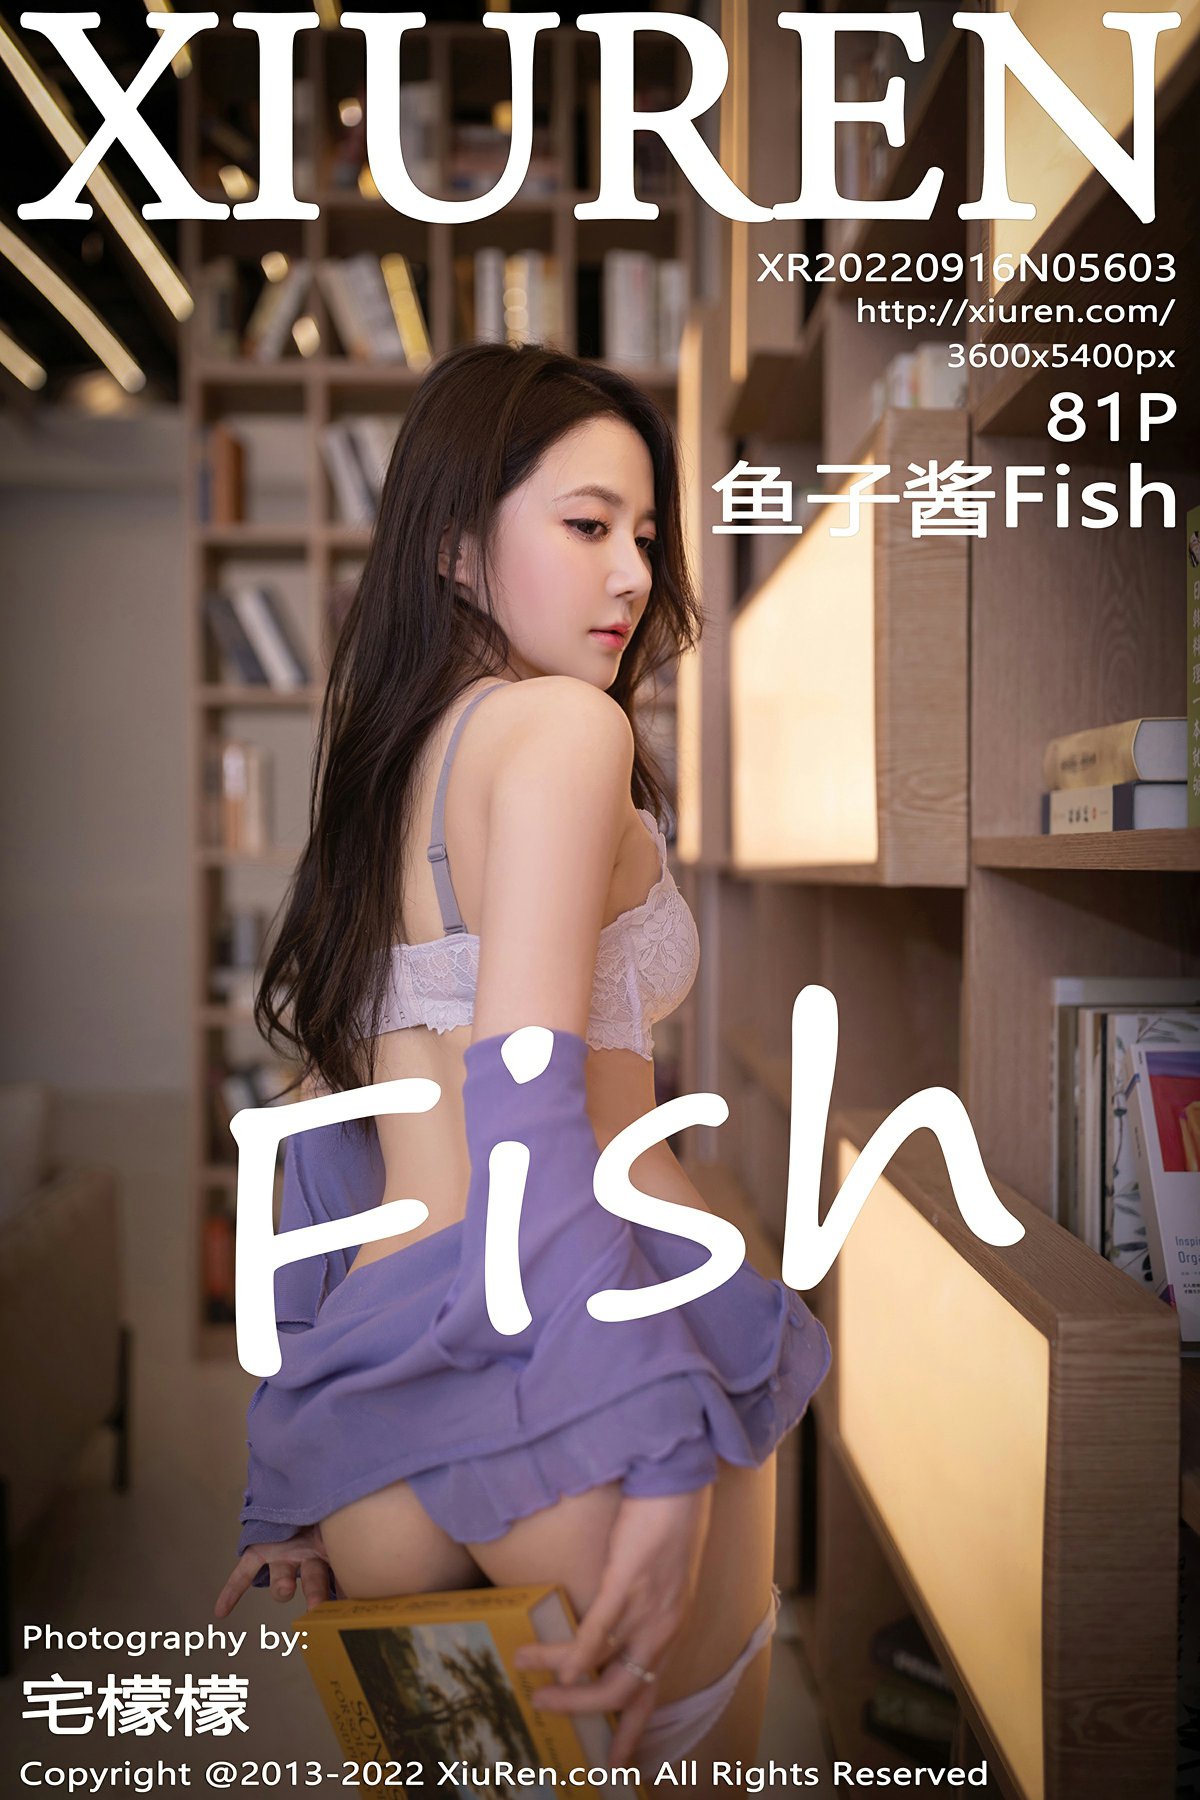 [XiuRen秀人网] No.5603 鱼子酱Fish1 